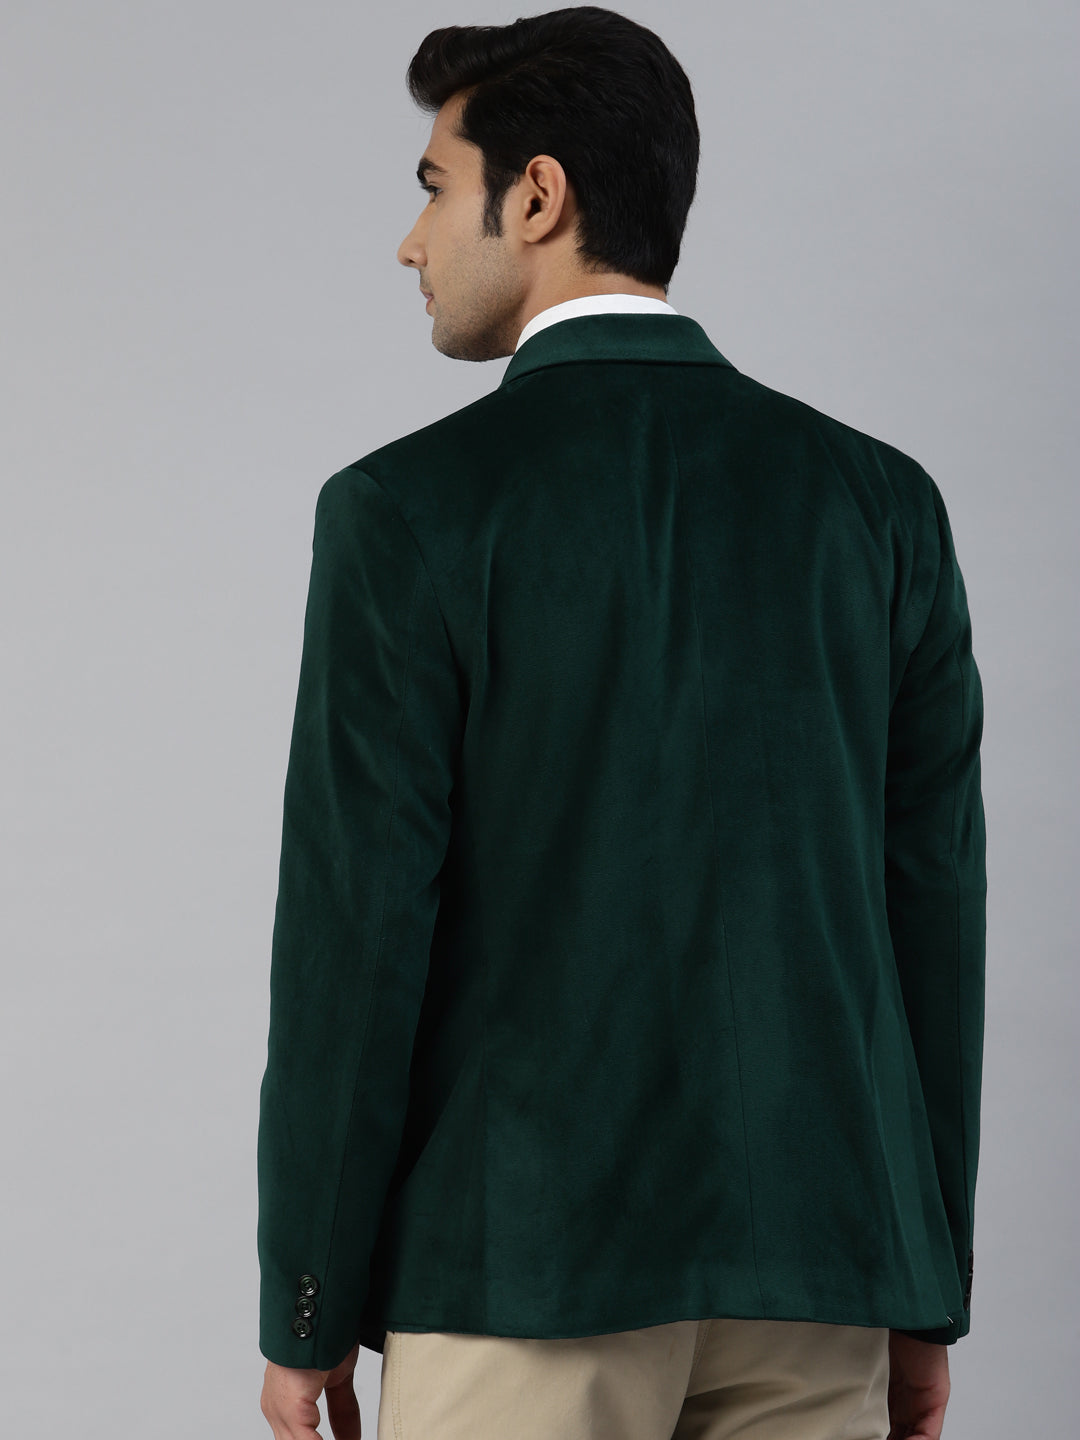 Luxrio Blazer Velvet Tuxedo for Men Green